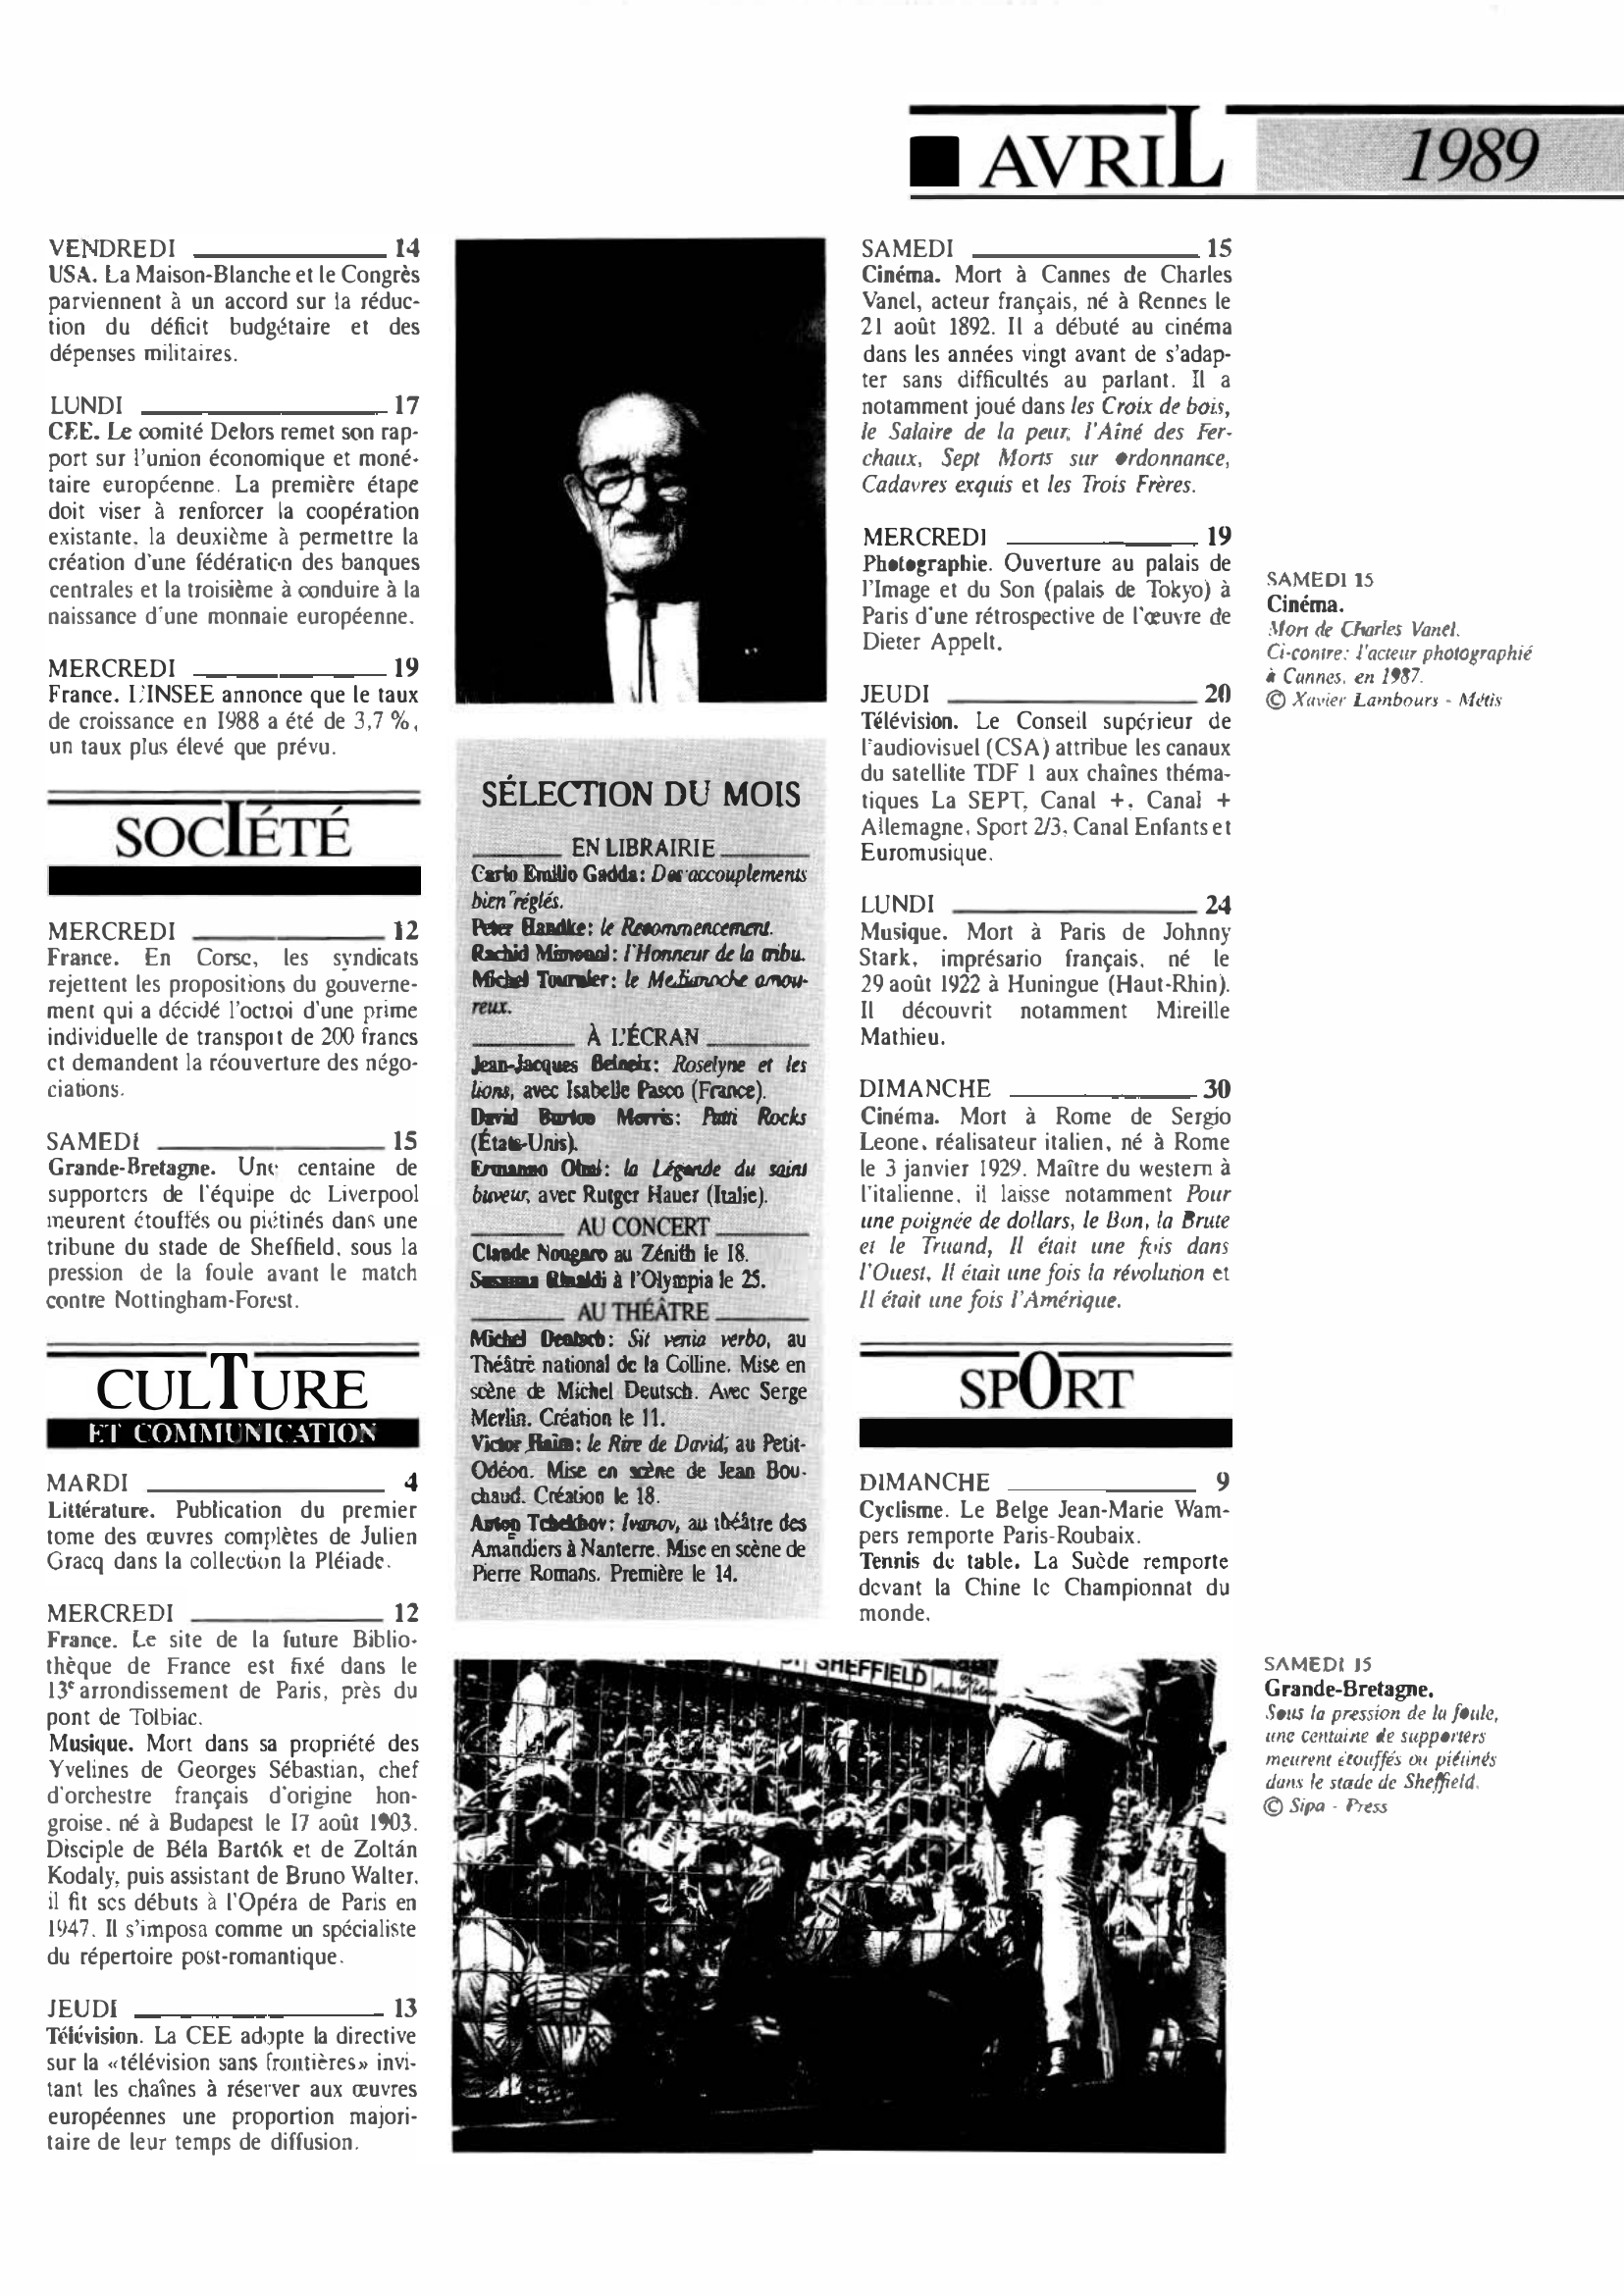 Prévisualisation du document 1989 Avril dans le monde (histoire chronologique)